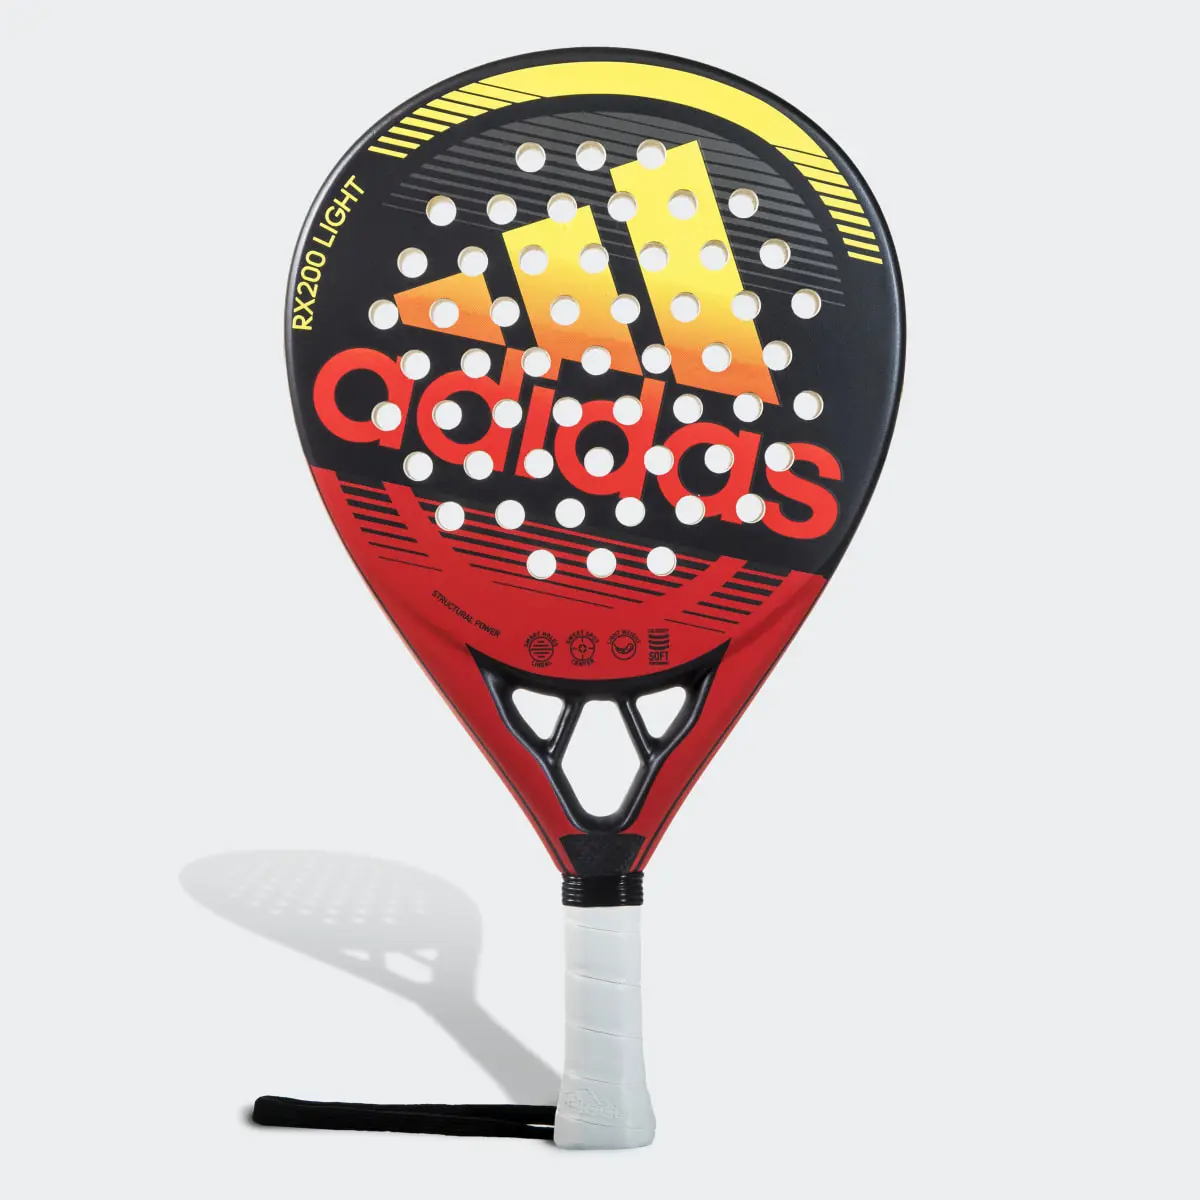 Adidas RX 200 Light Racquet. 1